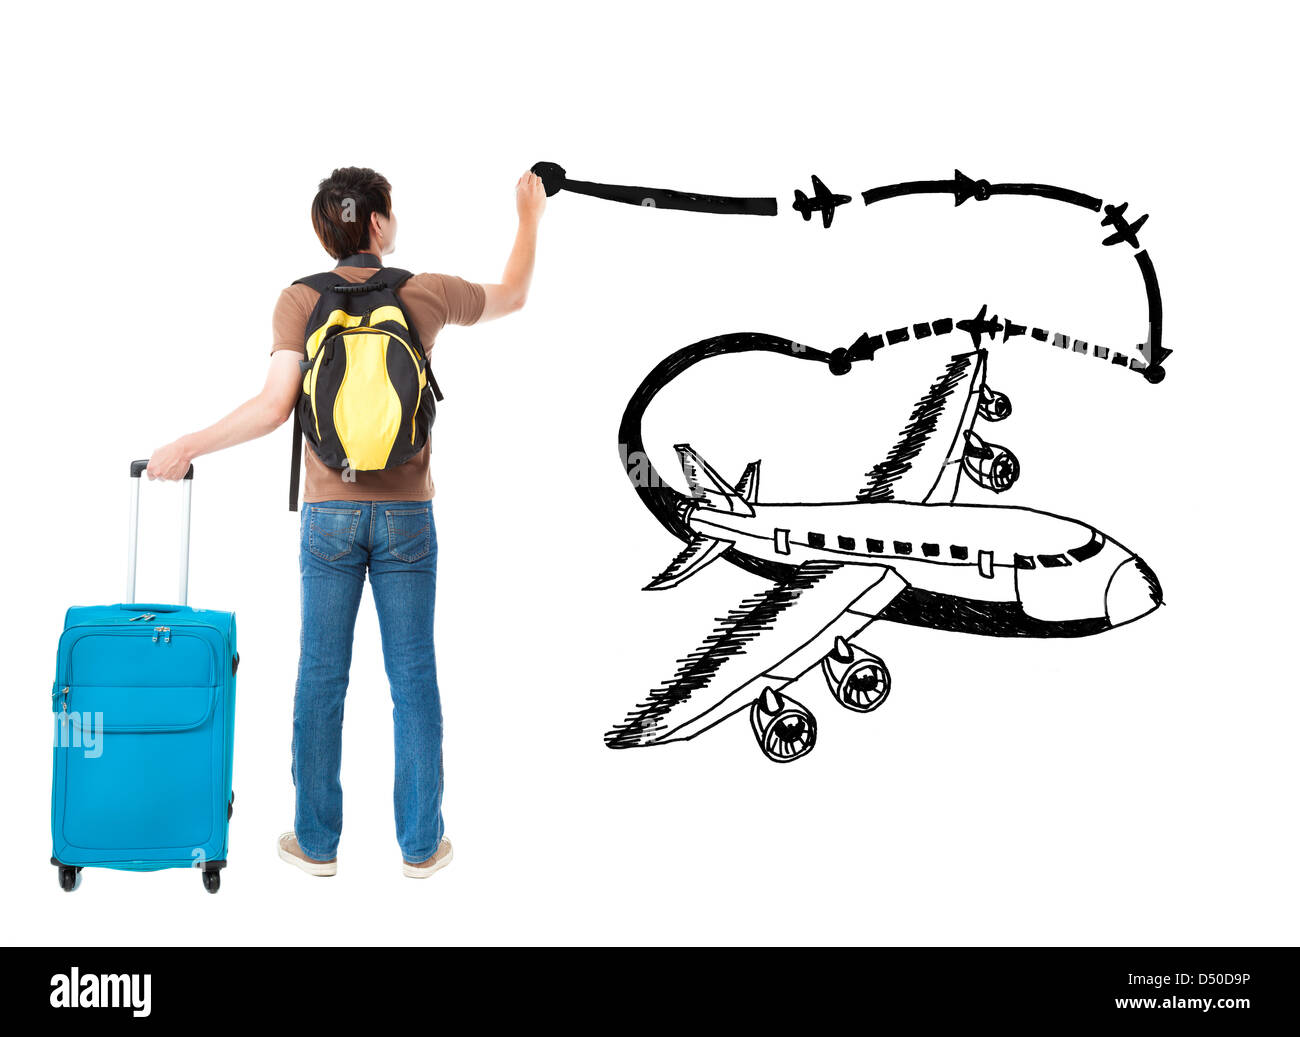 Los jóvenes viajeros de avión y dibujo ruta aérea sobre el fondo blanco. Foto de stock